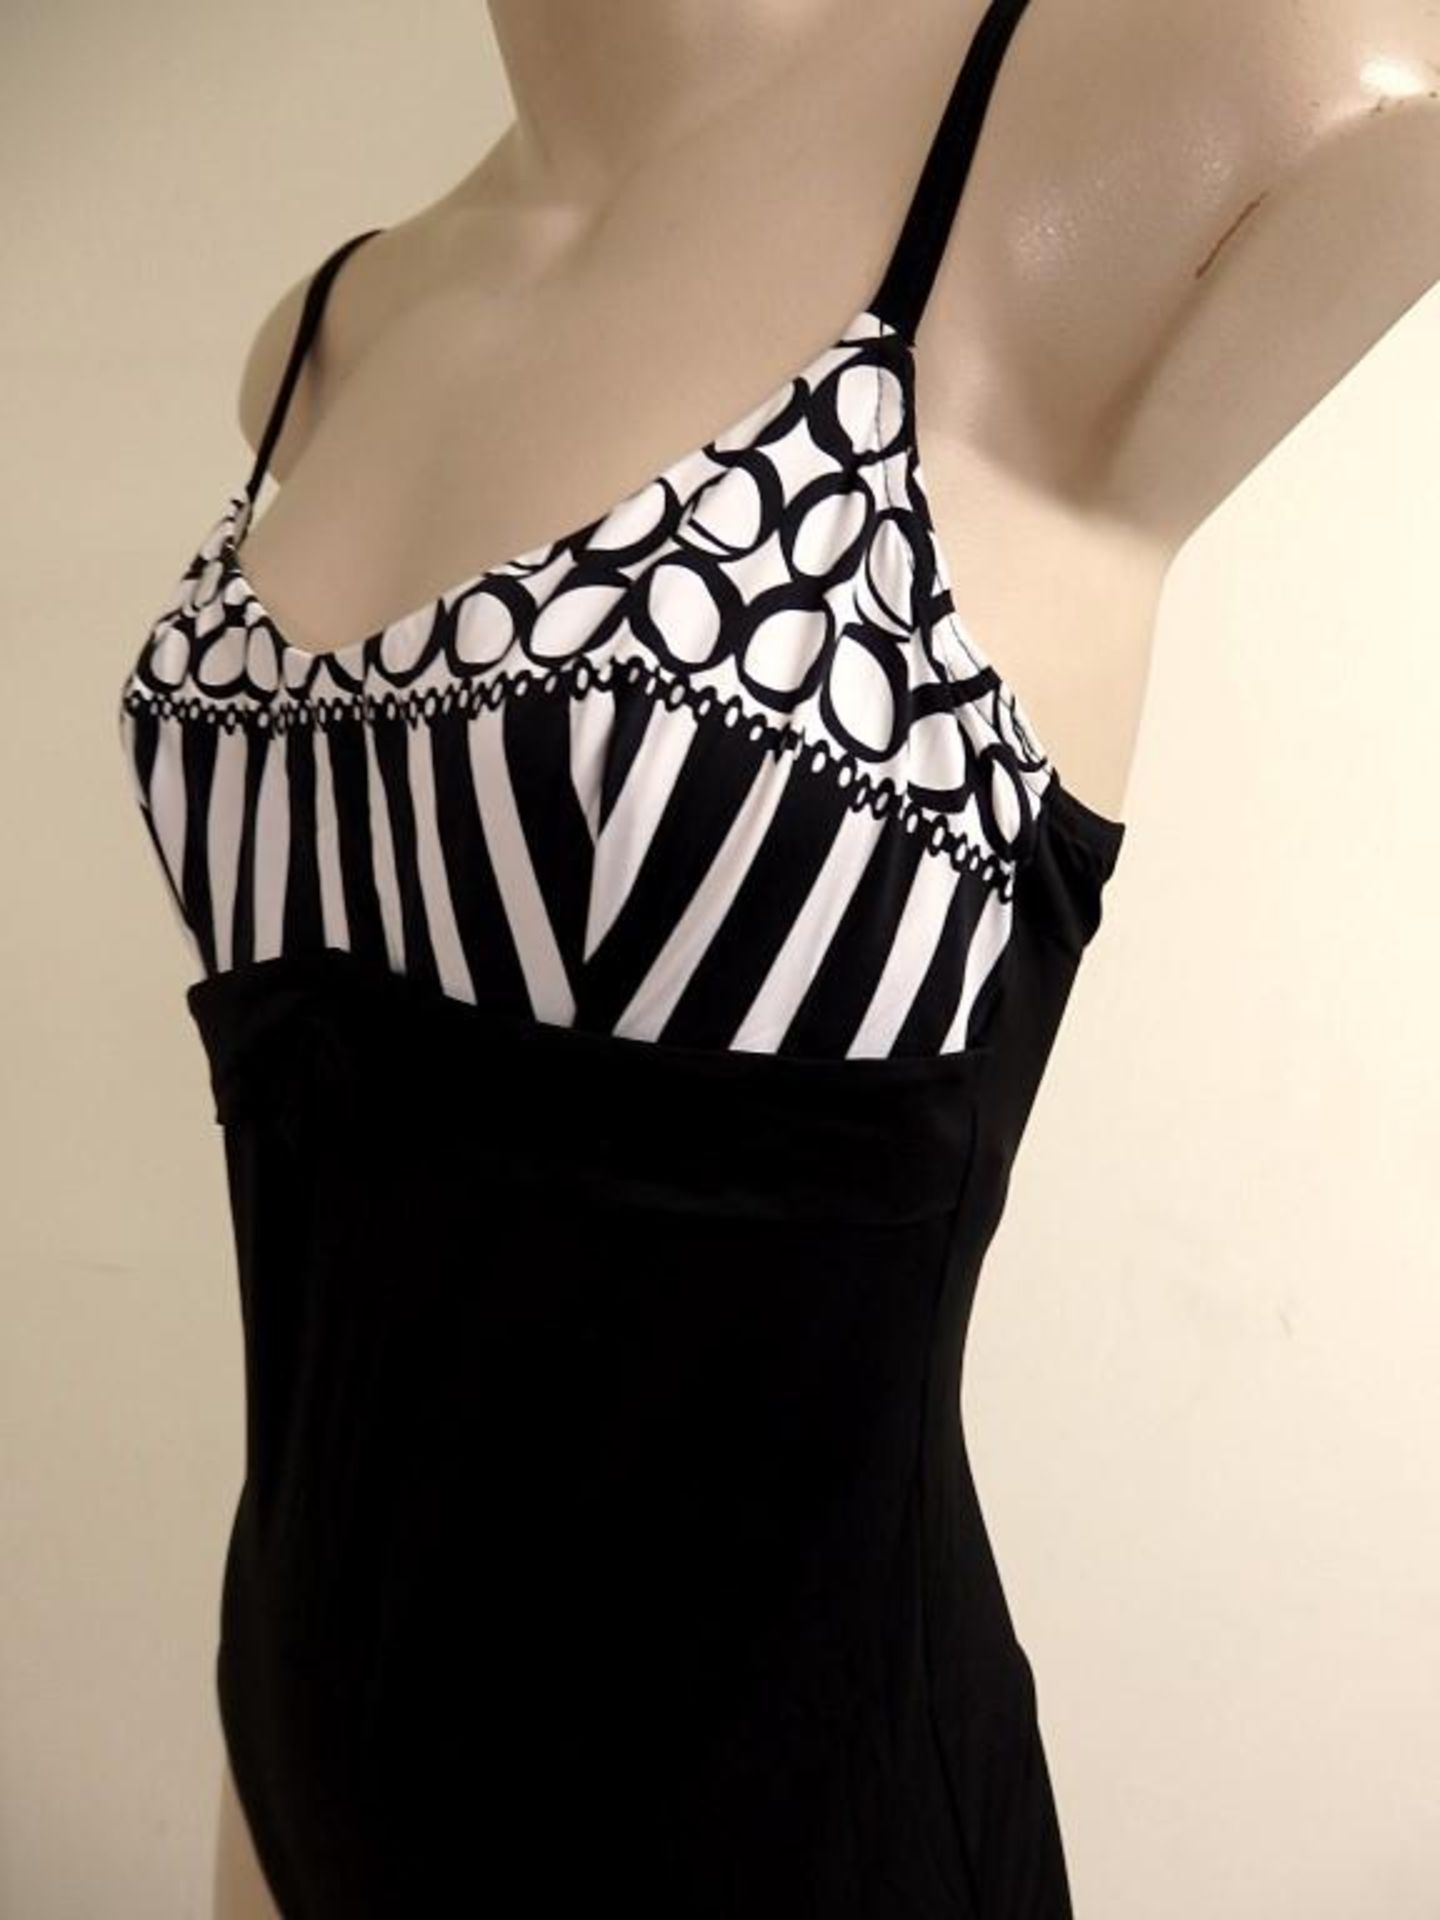 1 x Rasurel - Black/White patterned - Borneo Swimsuit - R20435 - Size 2C - UK 32 - Fr 85 - EU/Int 7 - Image 3 of 5